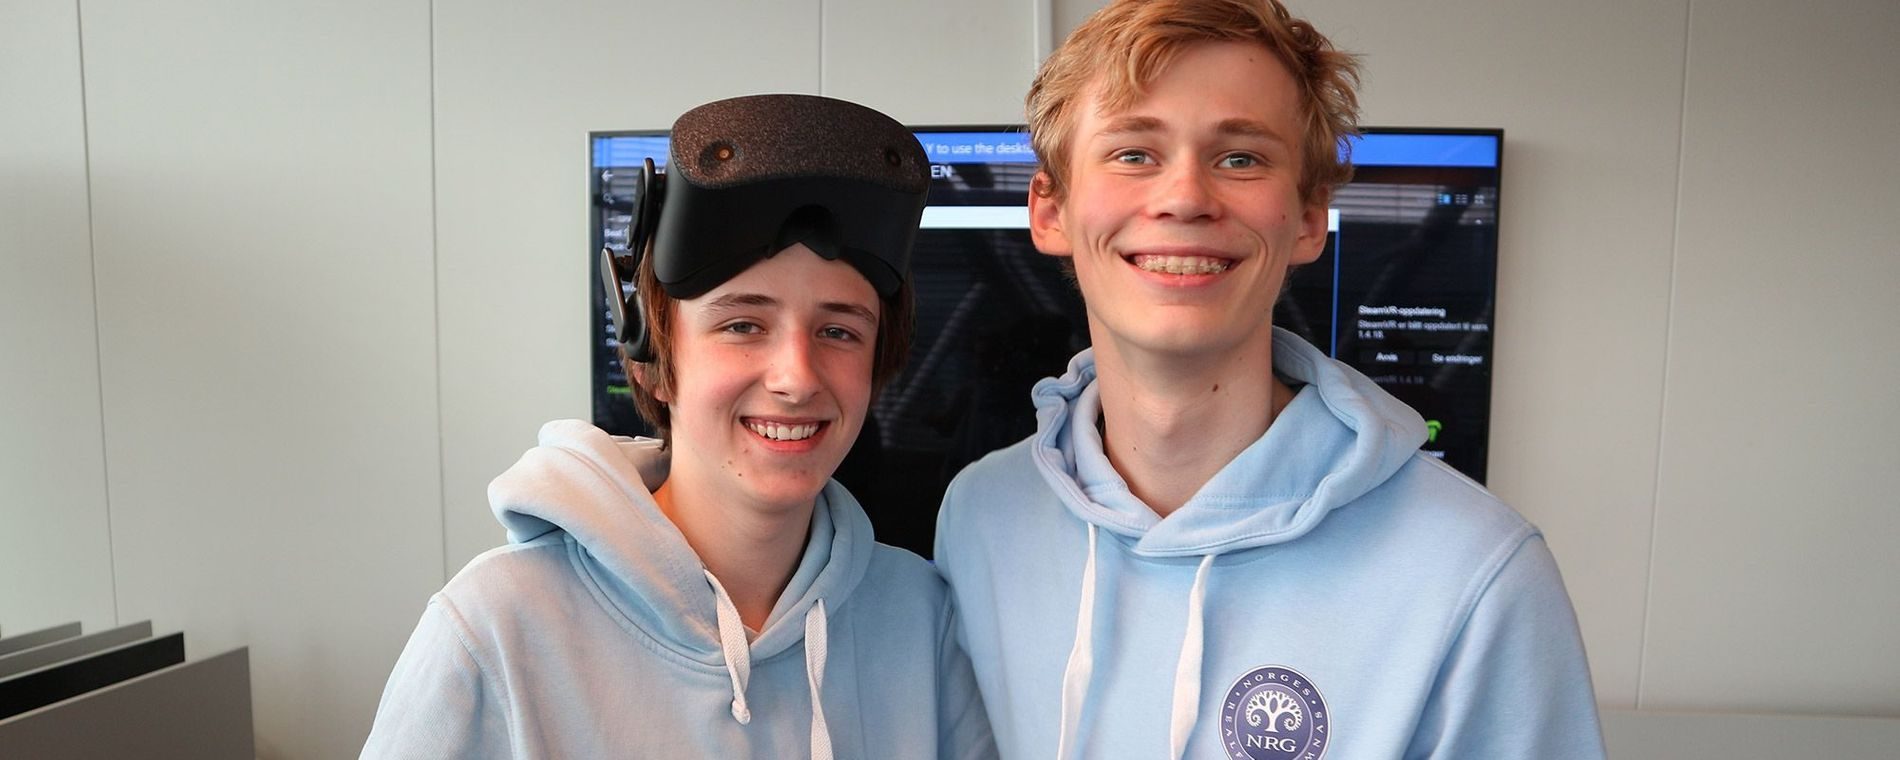 Norges Realfagsgymnas, skoleelever tester VR-briller hos HP, leksefri heldagsskole